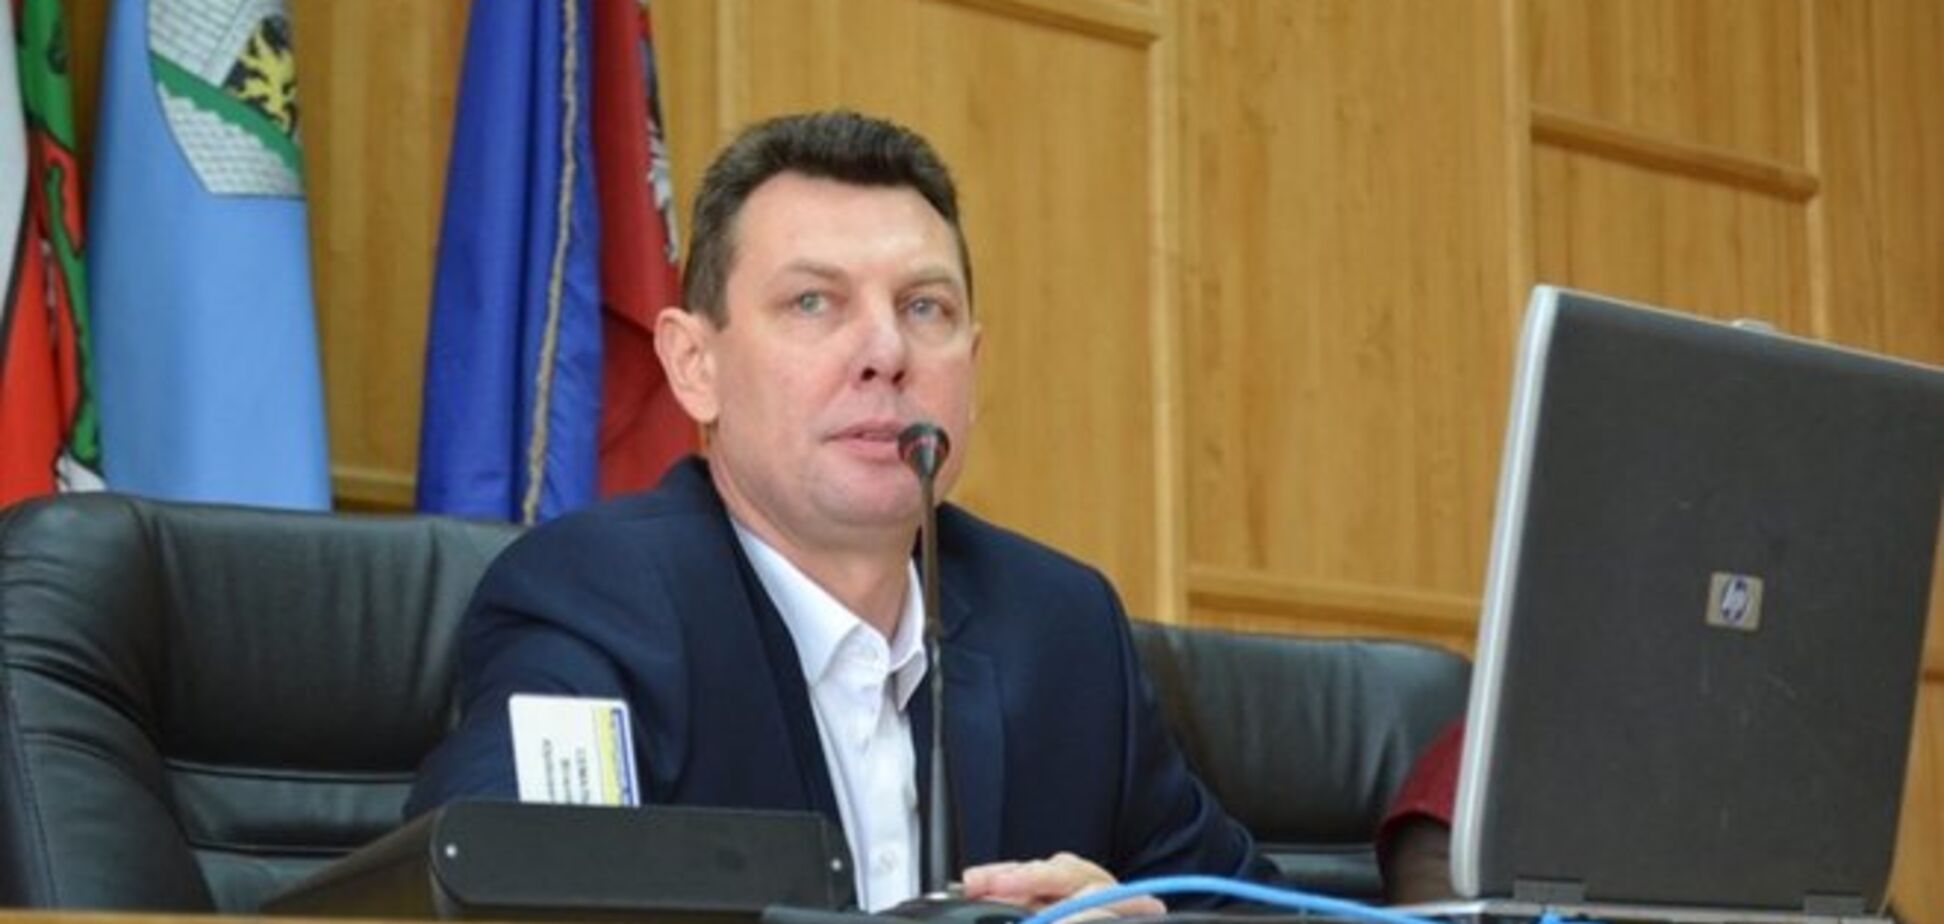 Мэр Ужгорода ушел в отставку, пробыв на посту всего лишь неделю